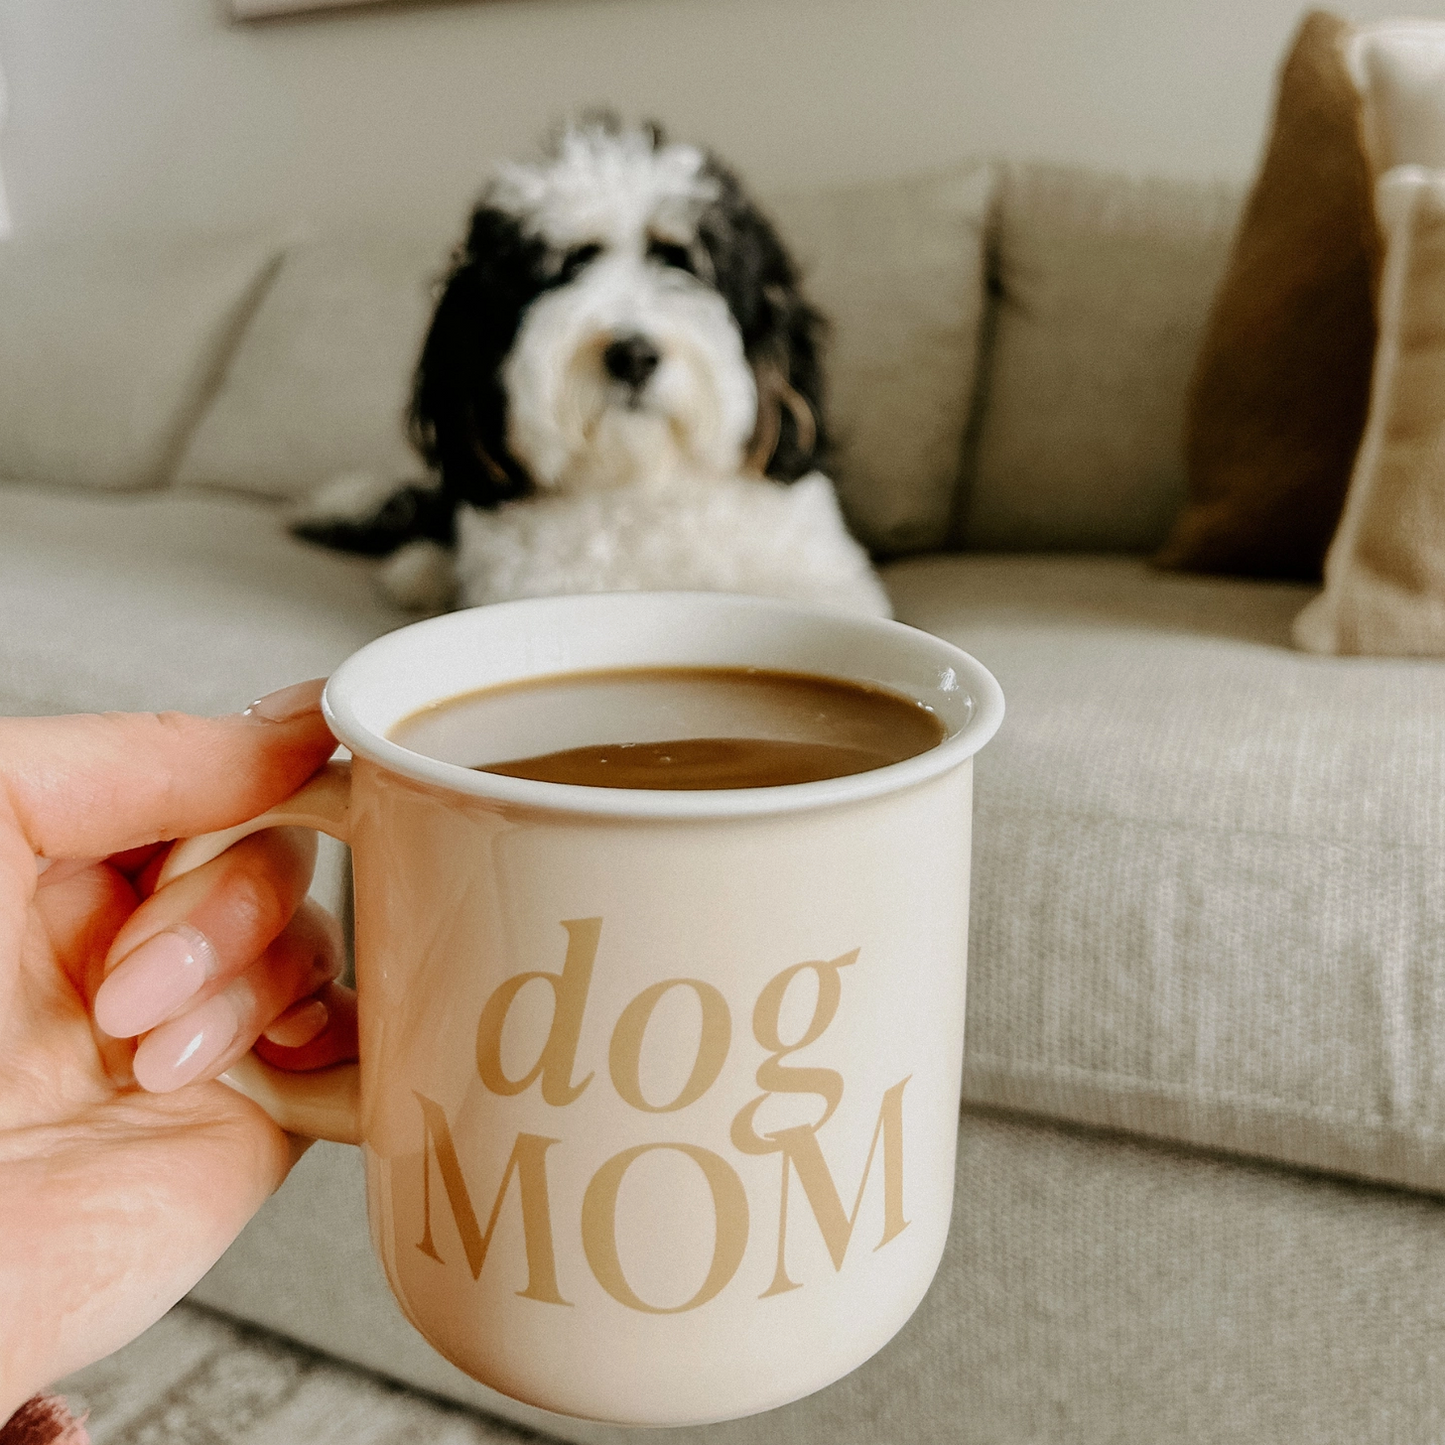 Mug - Dog Mom